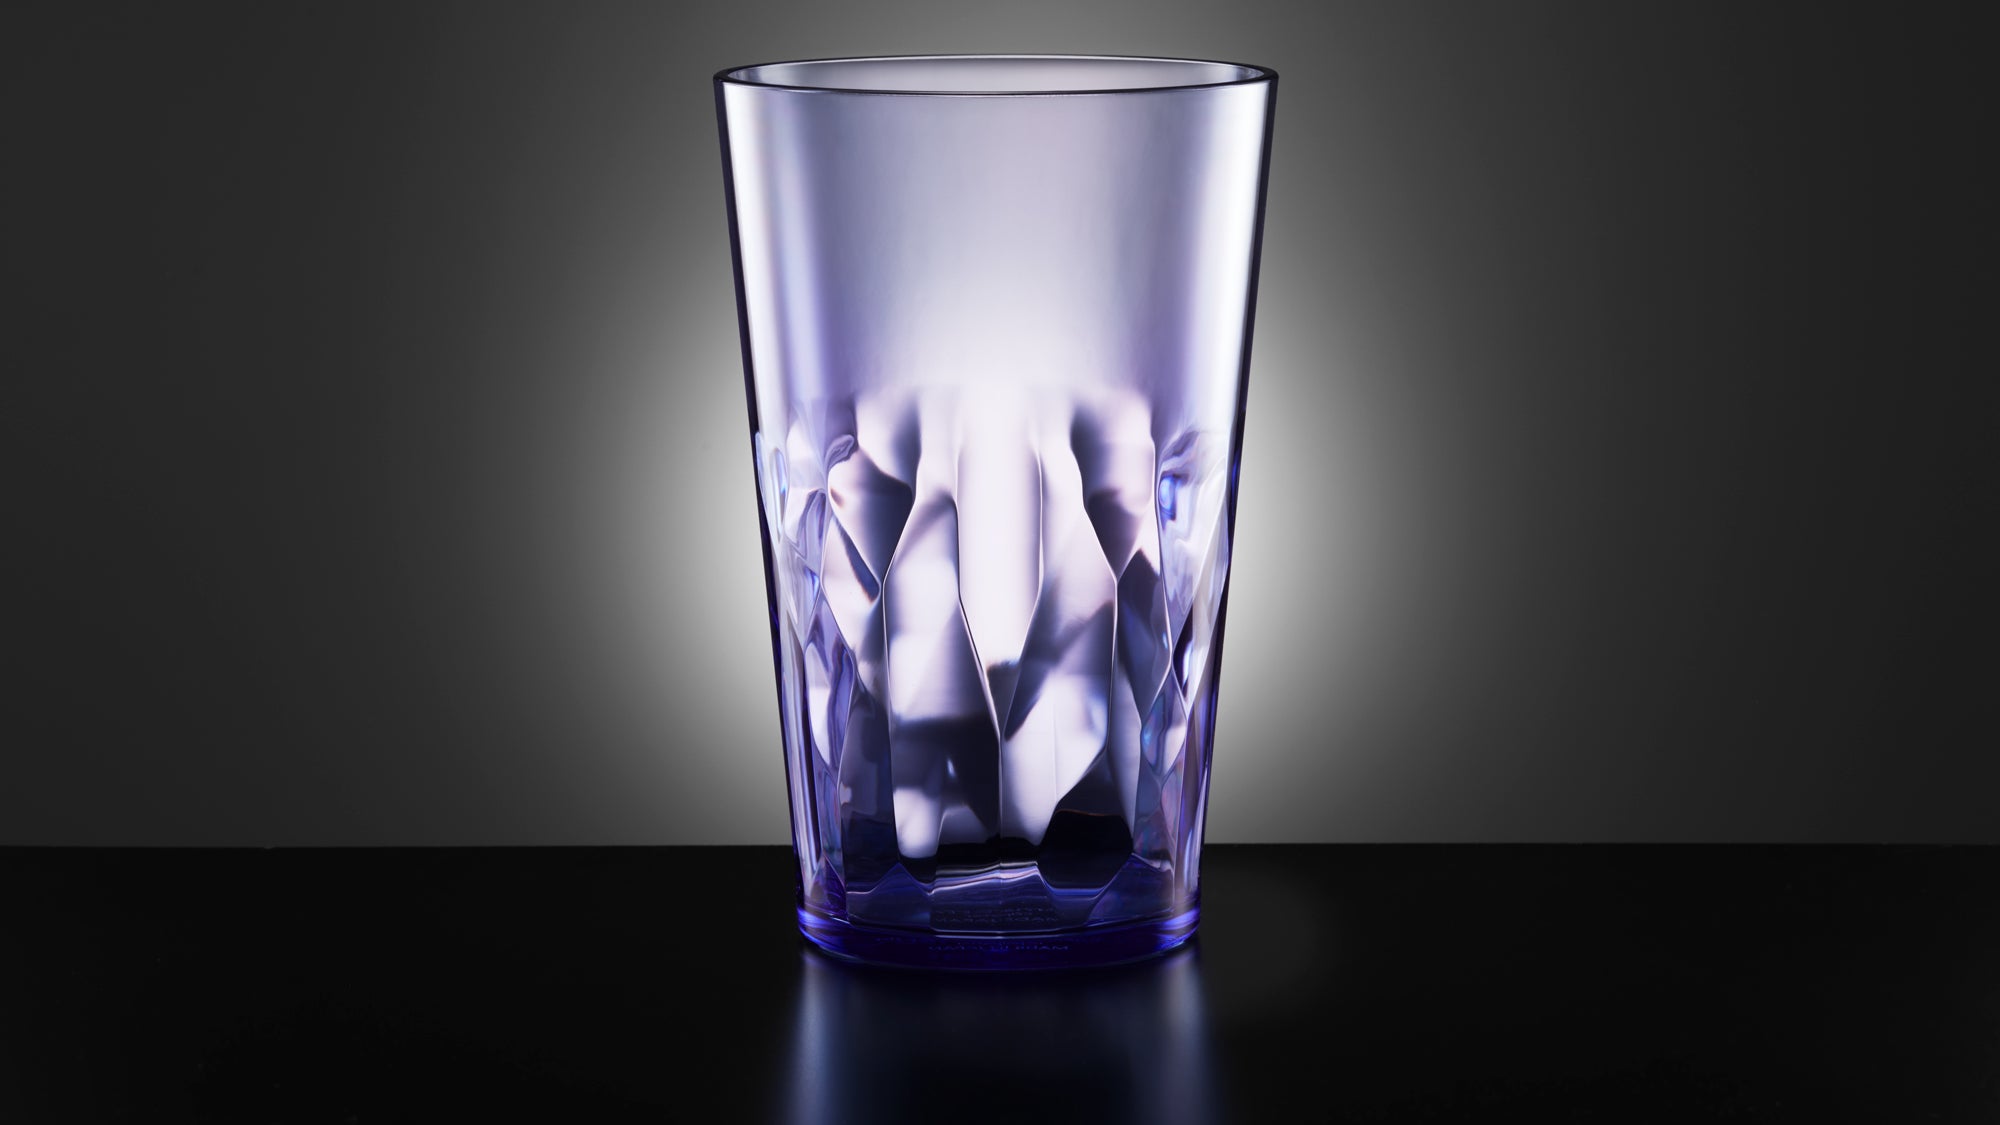 VEILEDGEM Look like glass] Unbreakable Drinking glasses Tritan